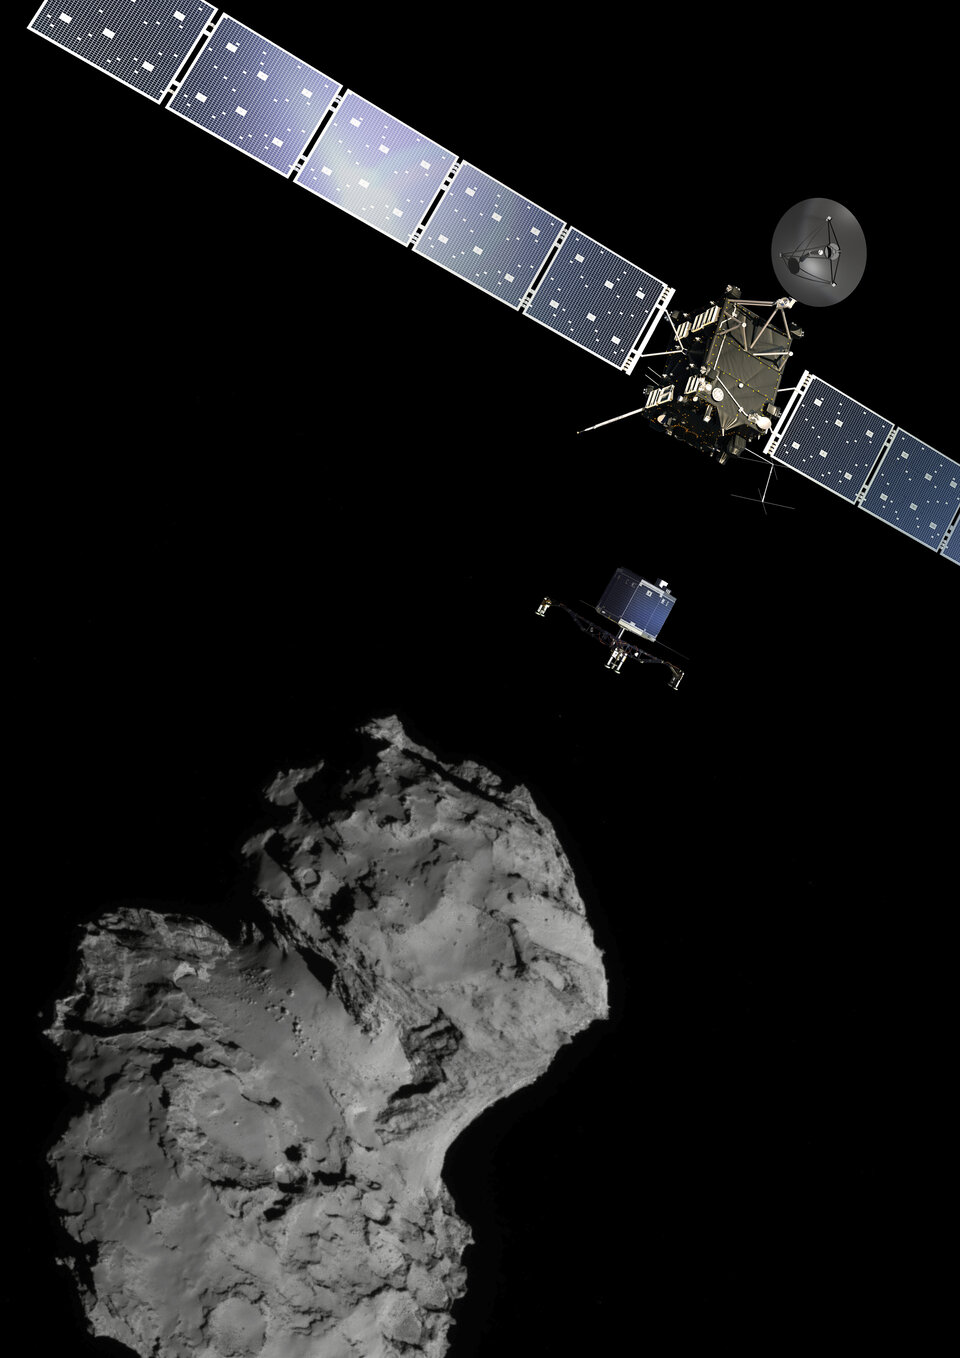 Seit 12. März 2015 hatte die Kommunikationseinheit an Bord des Rosetta-Orbiters immer wieder nach den Funksignalen des Landegerätes gelauscht